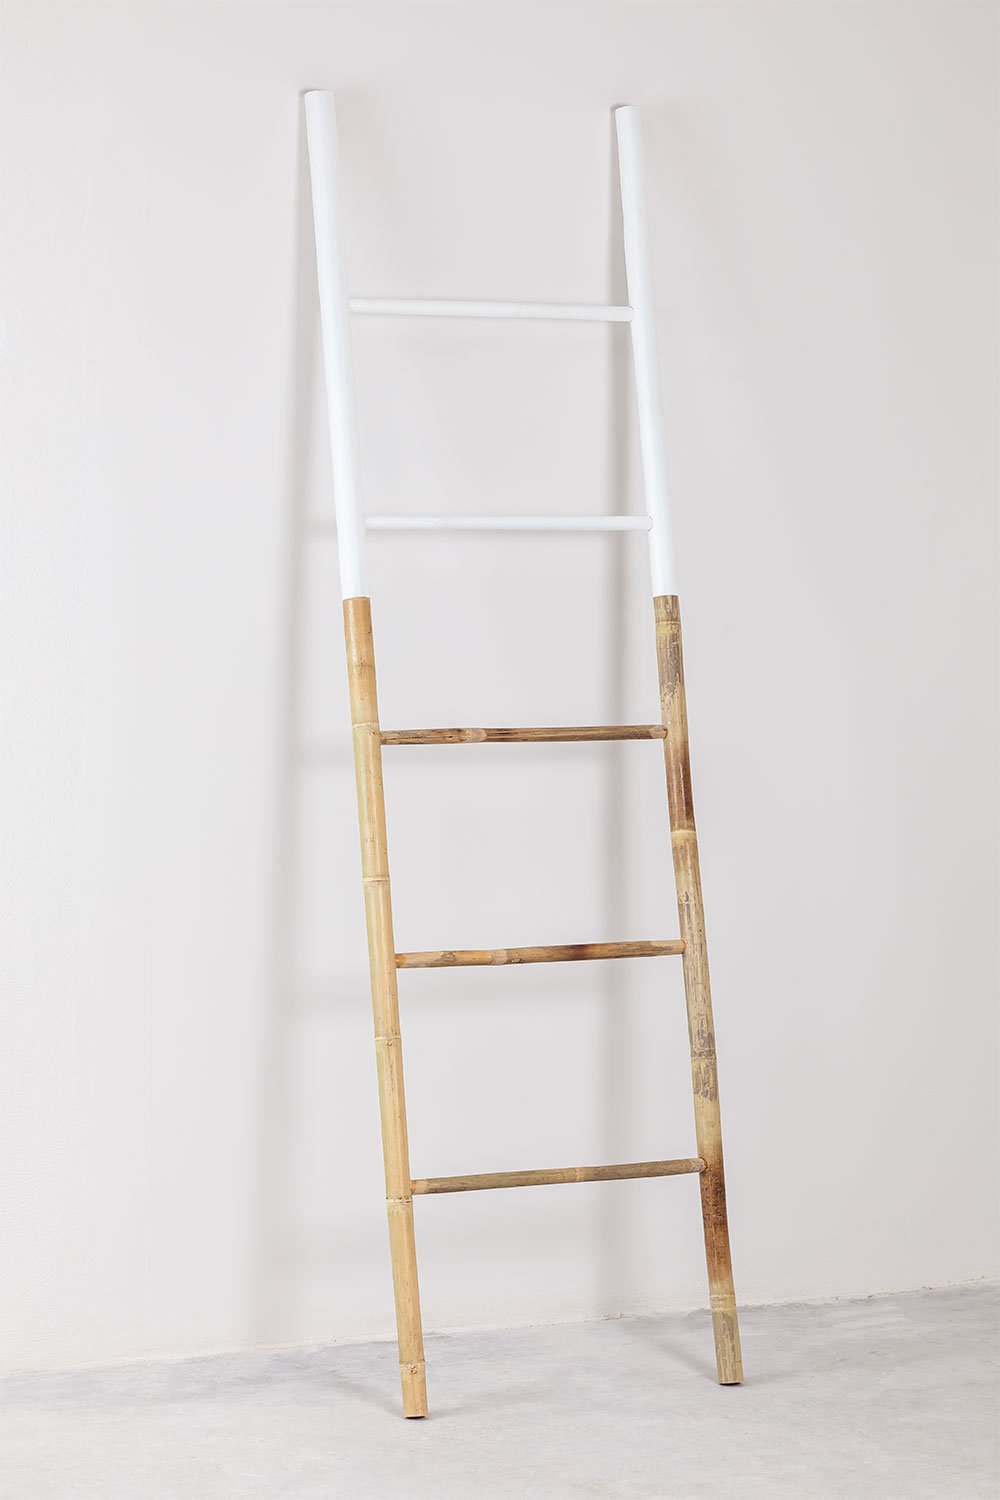 Ladder Leit Dipeada, galerij beeld 2